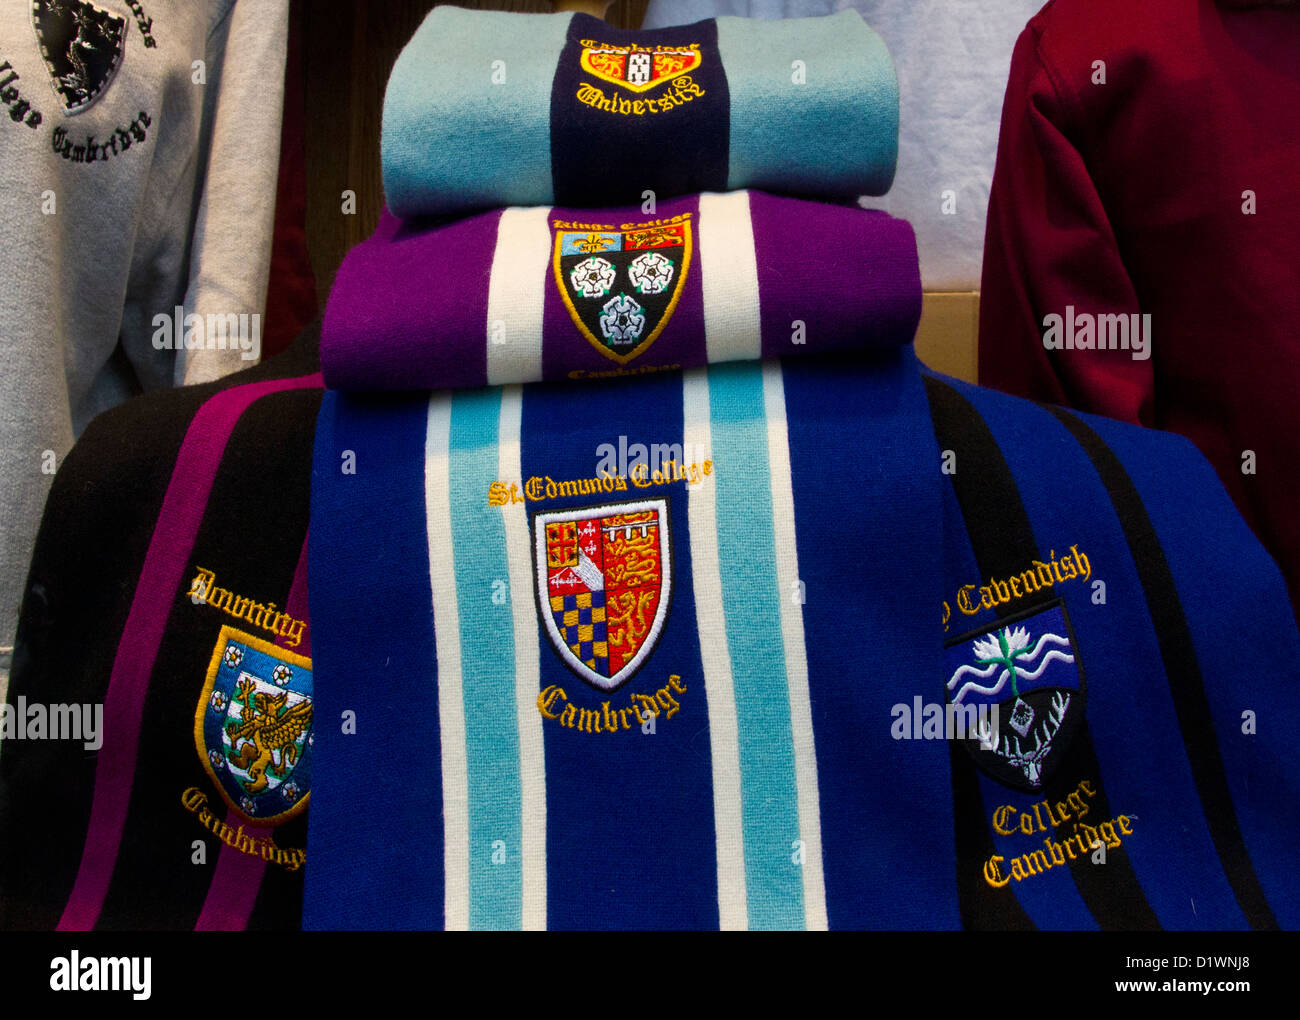 Schaufenster. Universität Cambridge Schal Schals und Kleidung der Universität Stockfoto